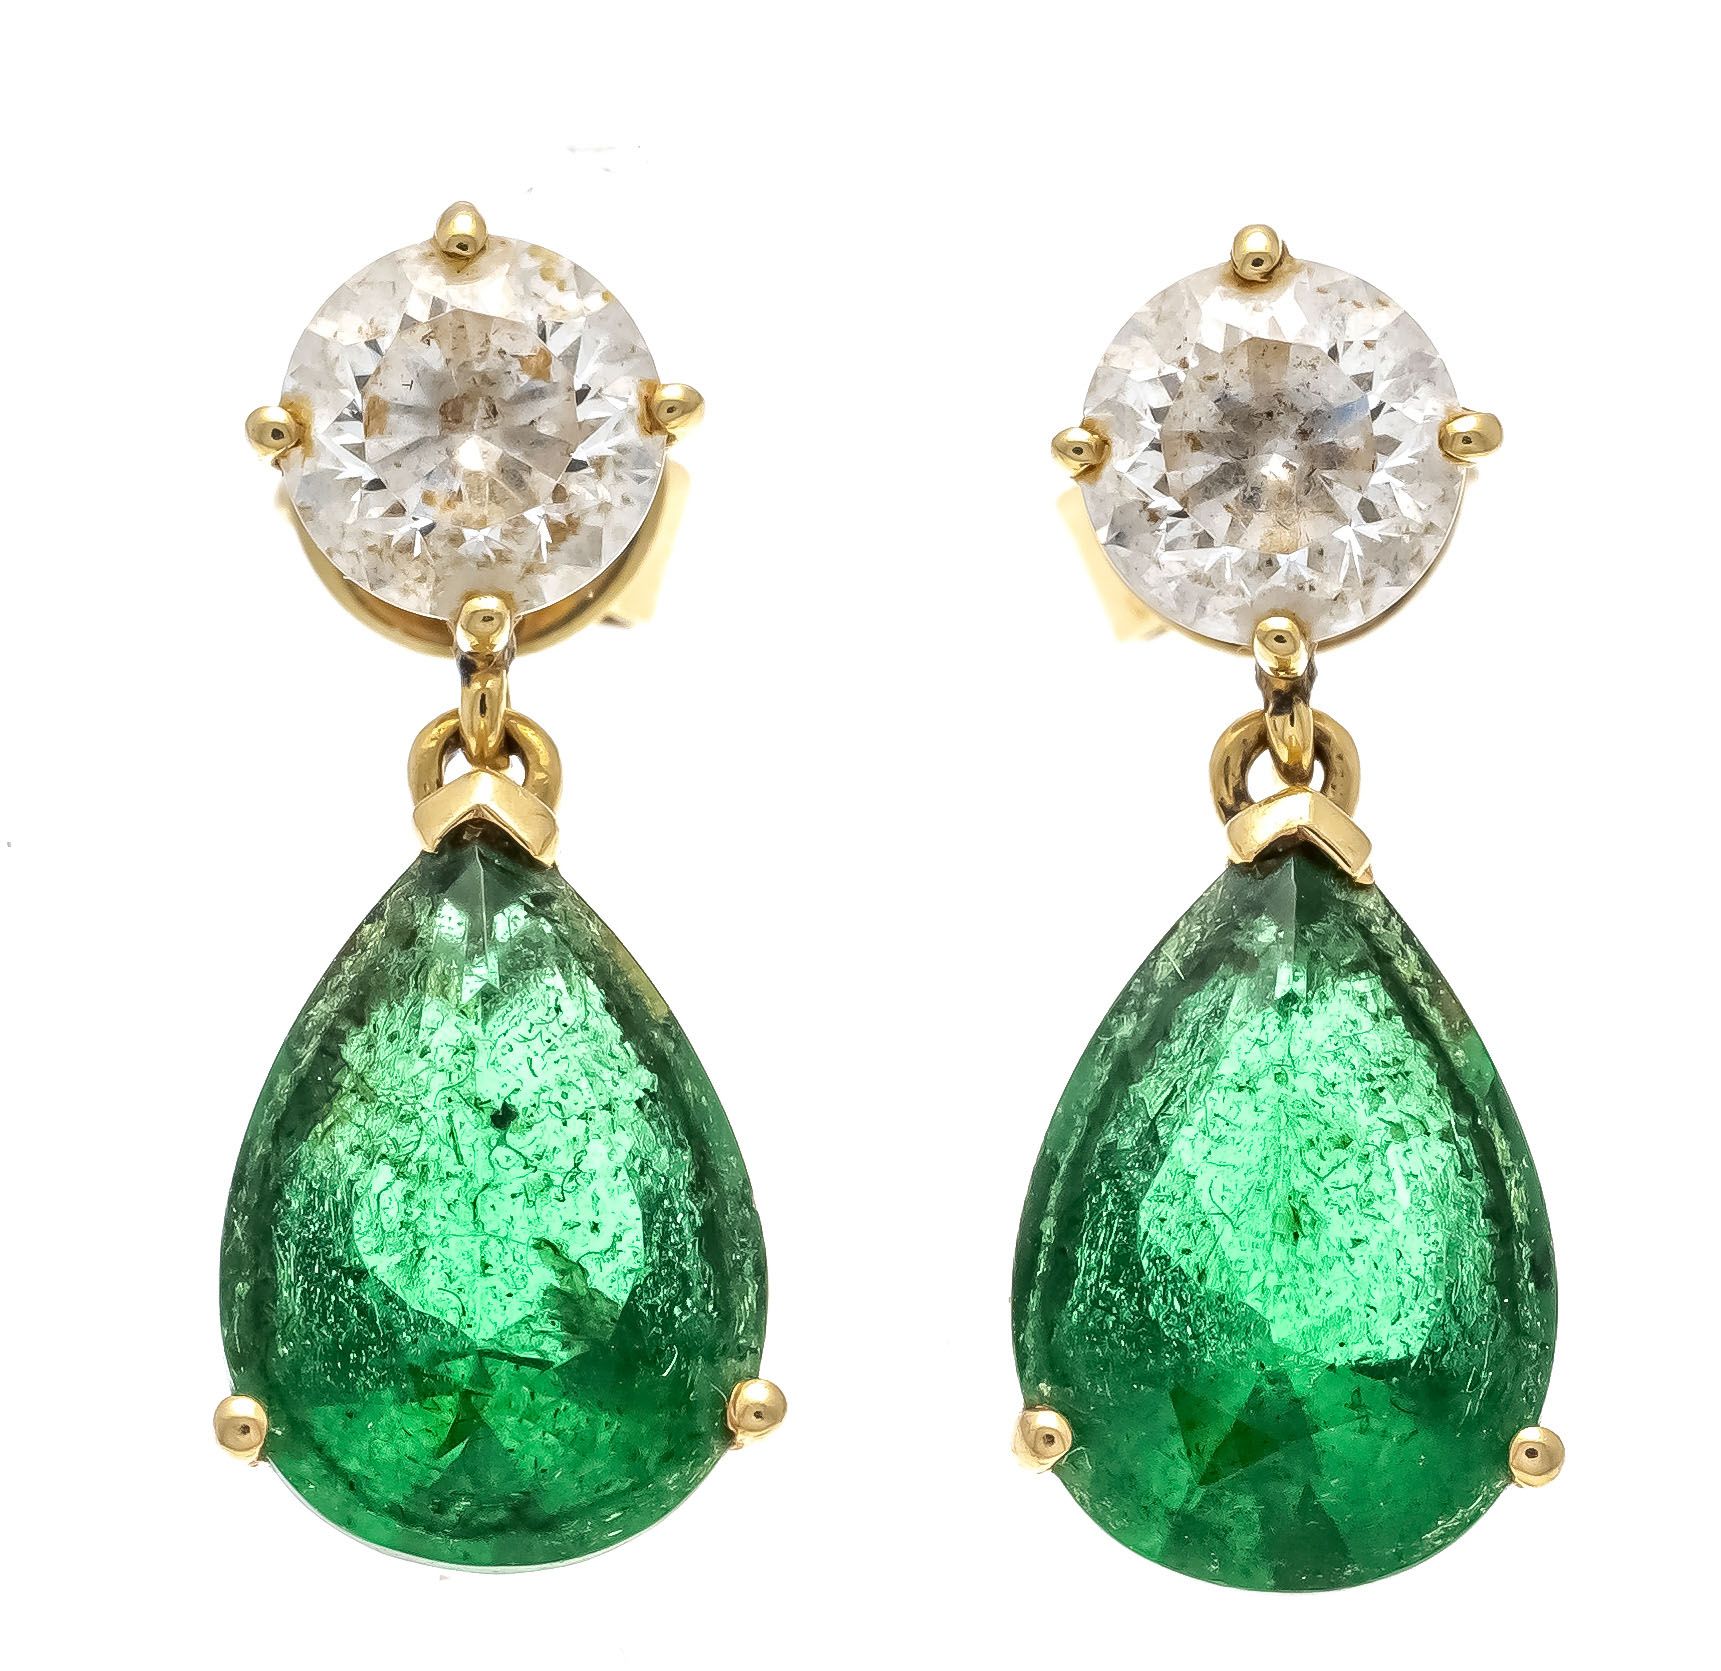 Null 宝石耳环 GG 585/000 配有2颗绿色水滴形和2颗白色圆形刻面宝石 10 - 5 mm, 19 mm, 2,5 g